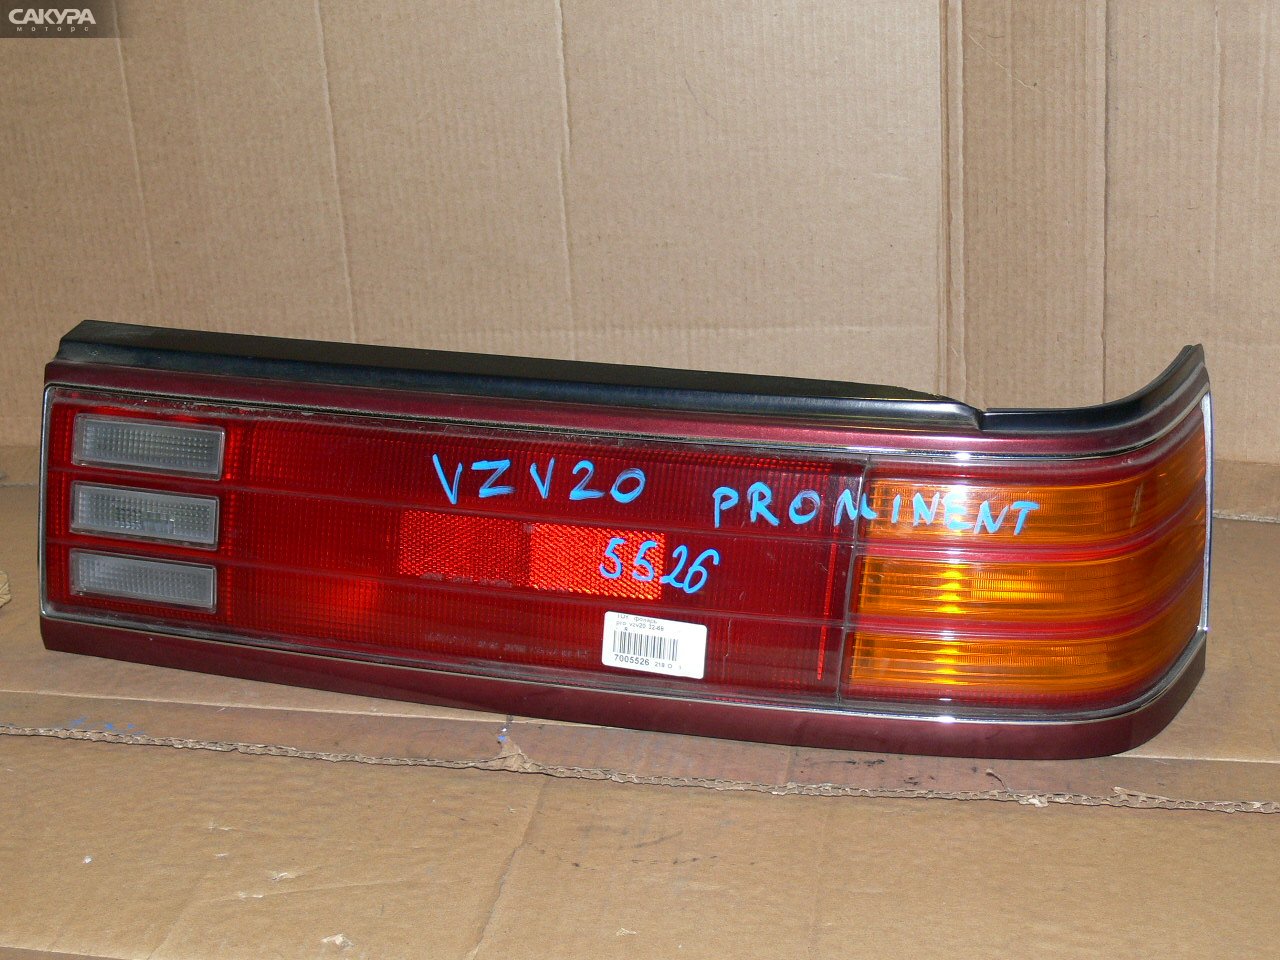 Фонарь стоп-сигнала правый Toyota Camry Prominent VZV20 32-68: купить в Сакура Иркутск.